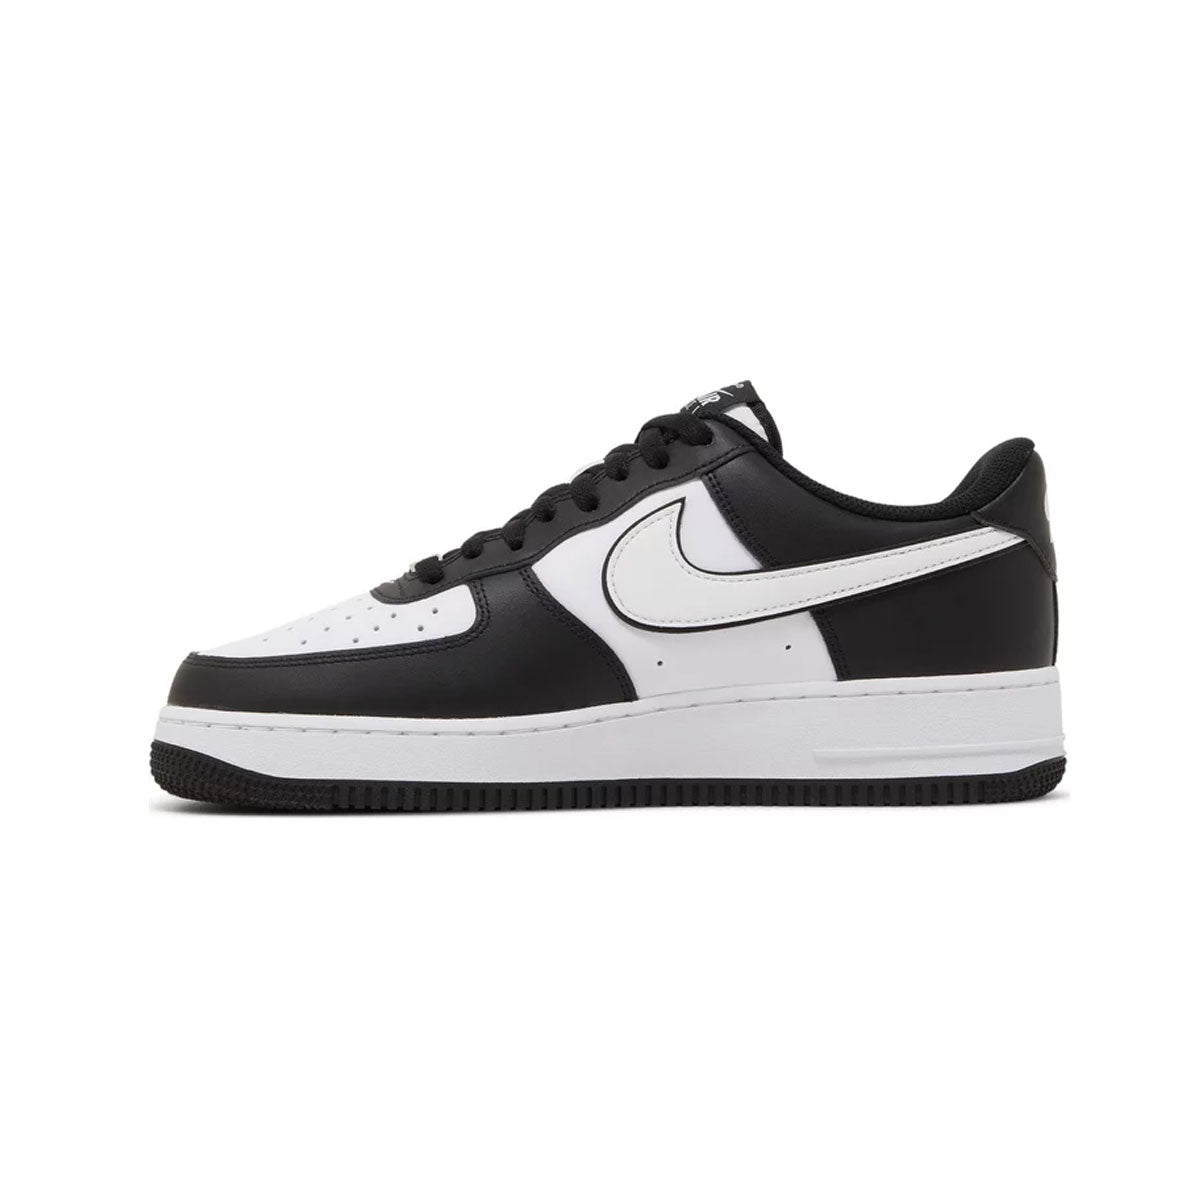 Nike Air Force 1 Low “Panda”